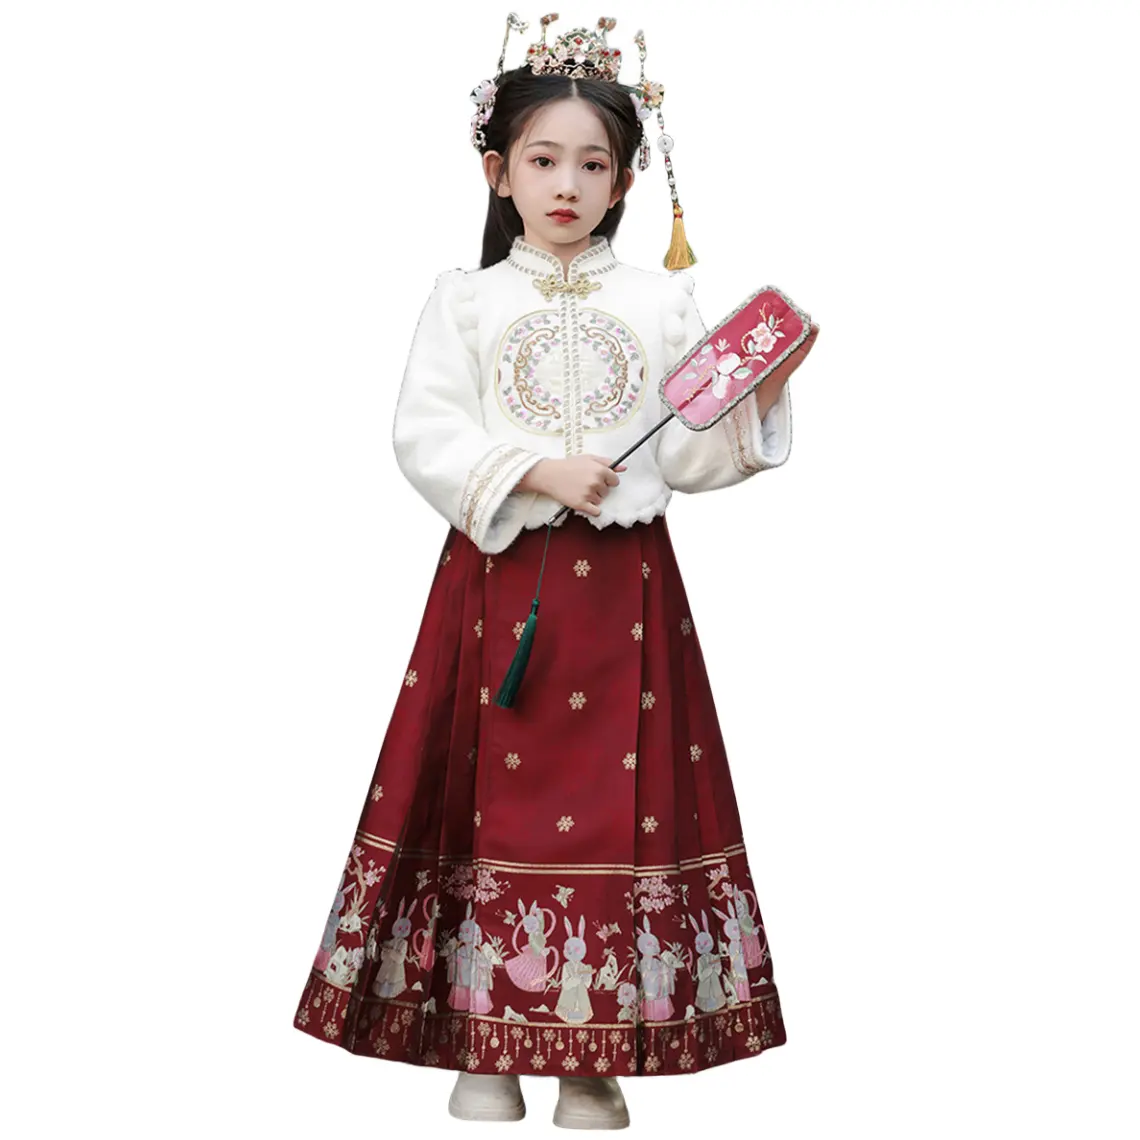 Hanfu เสื้อสาวหน้าม้ากระโปรงจีน-เก๋ชุดแต่งงานชุดฤดูหนาวสไตล์เด็กเสื้อผ้าปีใหม่จีน